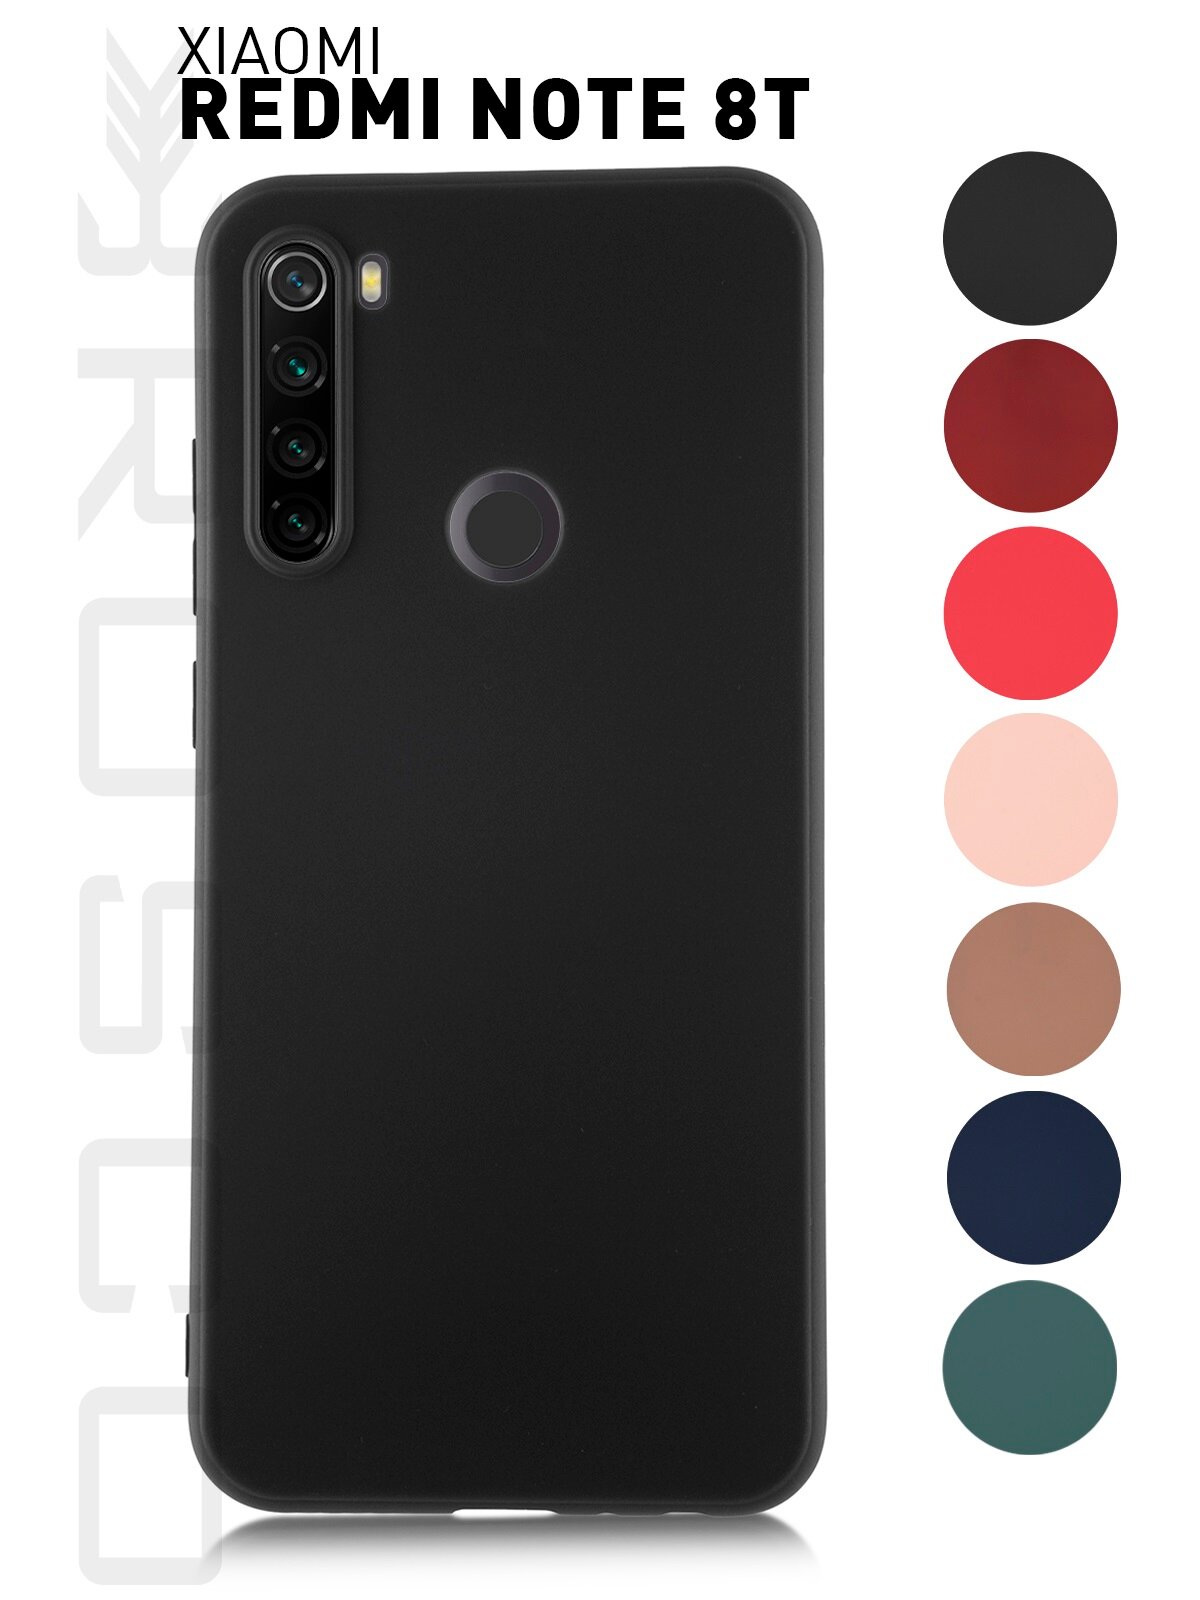 Матовый чехол ROSCO для Xiaomi Redmi Note 8T (Сяоми Редми Ноут 8Т), защита камеры, силиконовый, черный